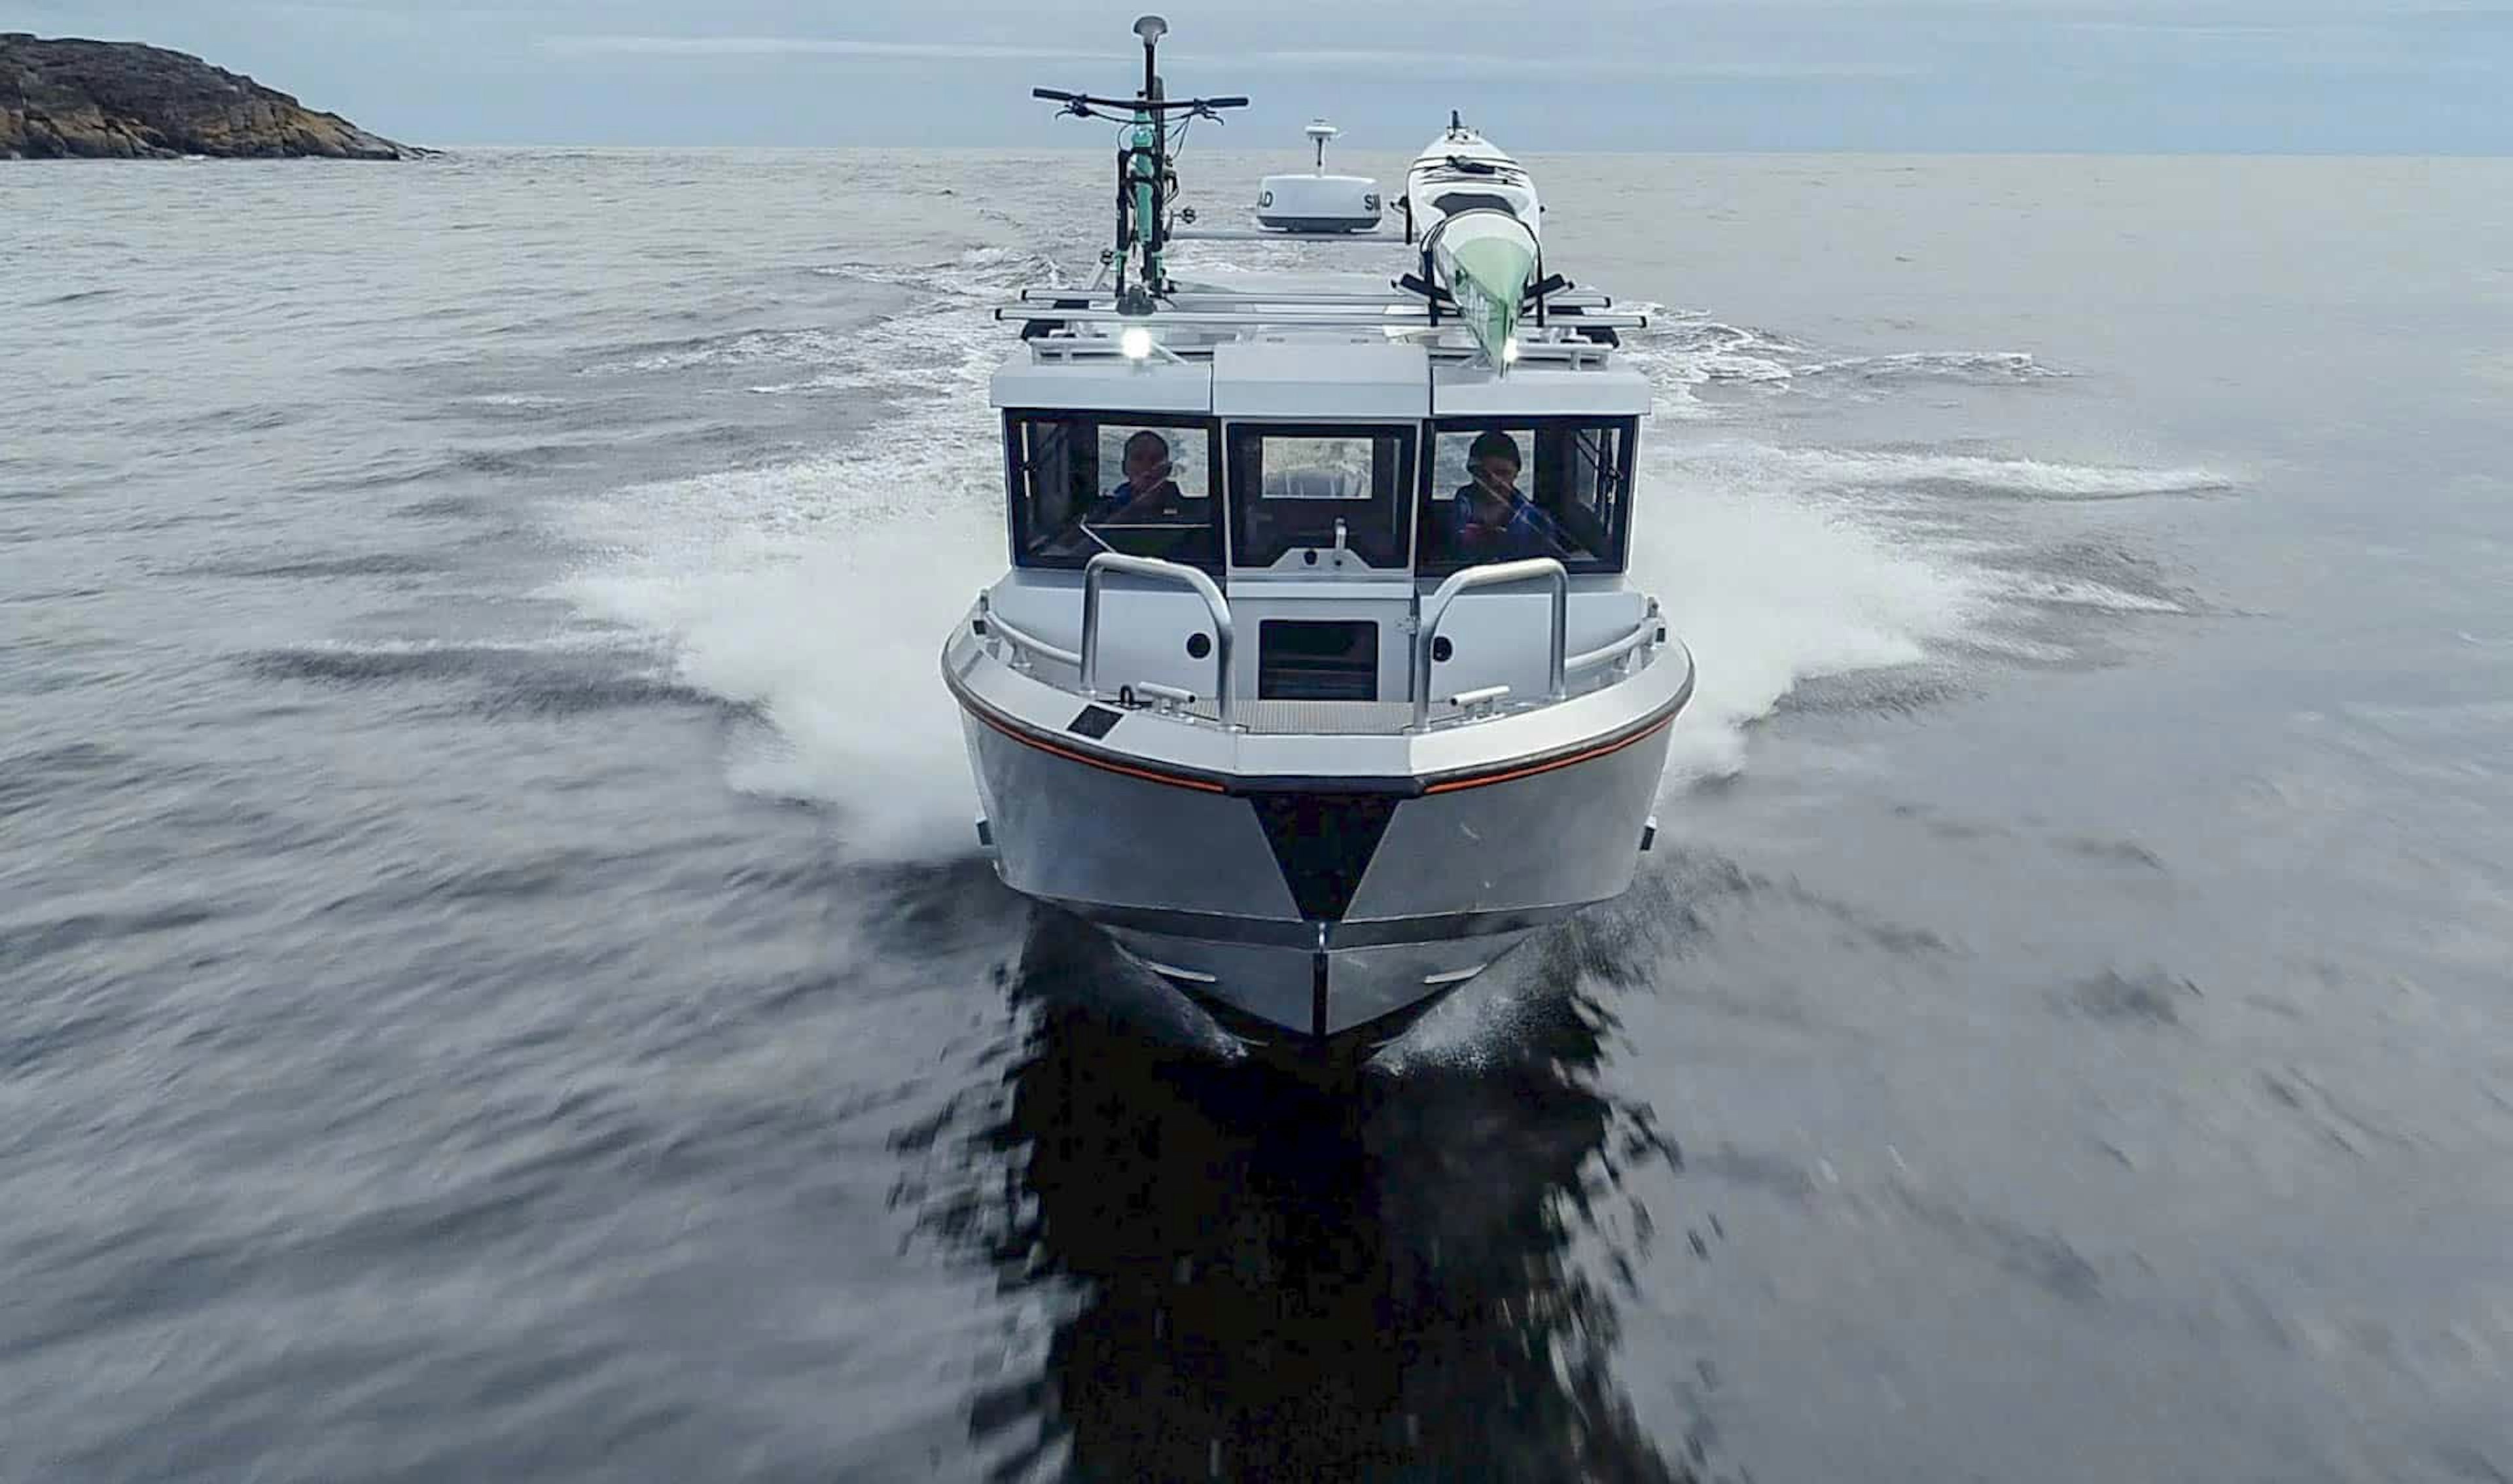 Hyttbåten Ockelbo B25 Cab testas under test av Hamnen.se i Örnsköldsviks skärgård.